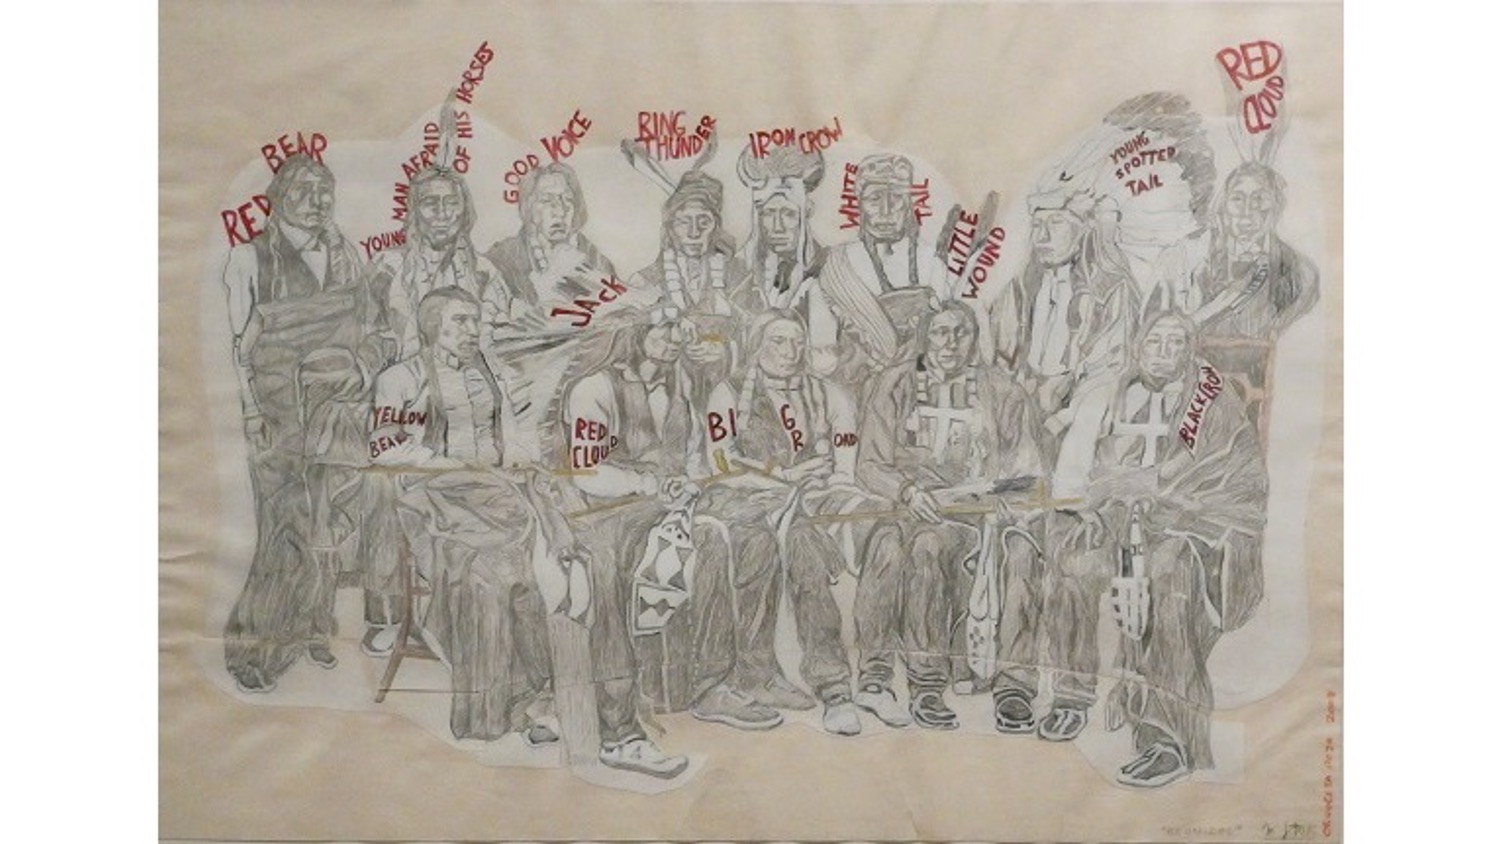 Magdalena Jitrik. Artista argentina nacida en 1966. "Orquesta roja. 'Reunidos'", 2008. Collage. Lápiz y tinta sobre papel. 31,7 x 44,7 cm